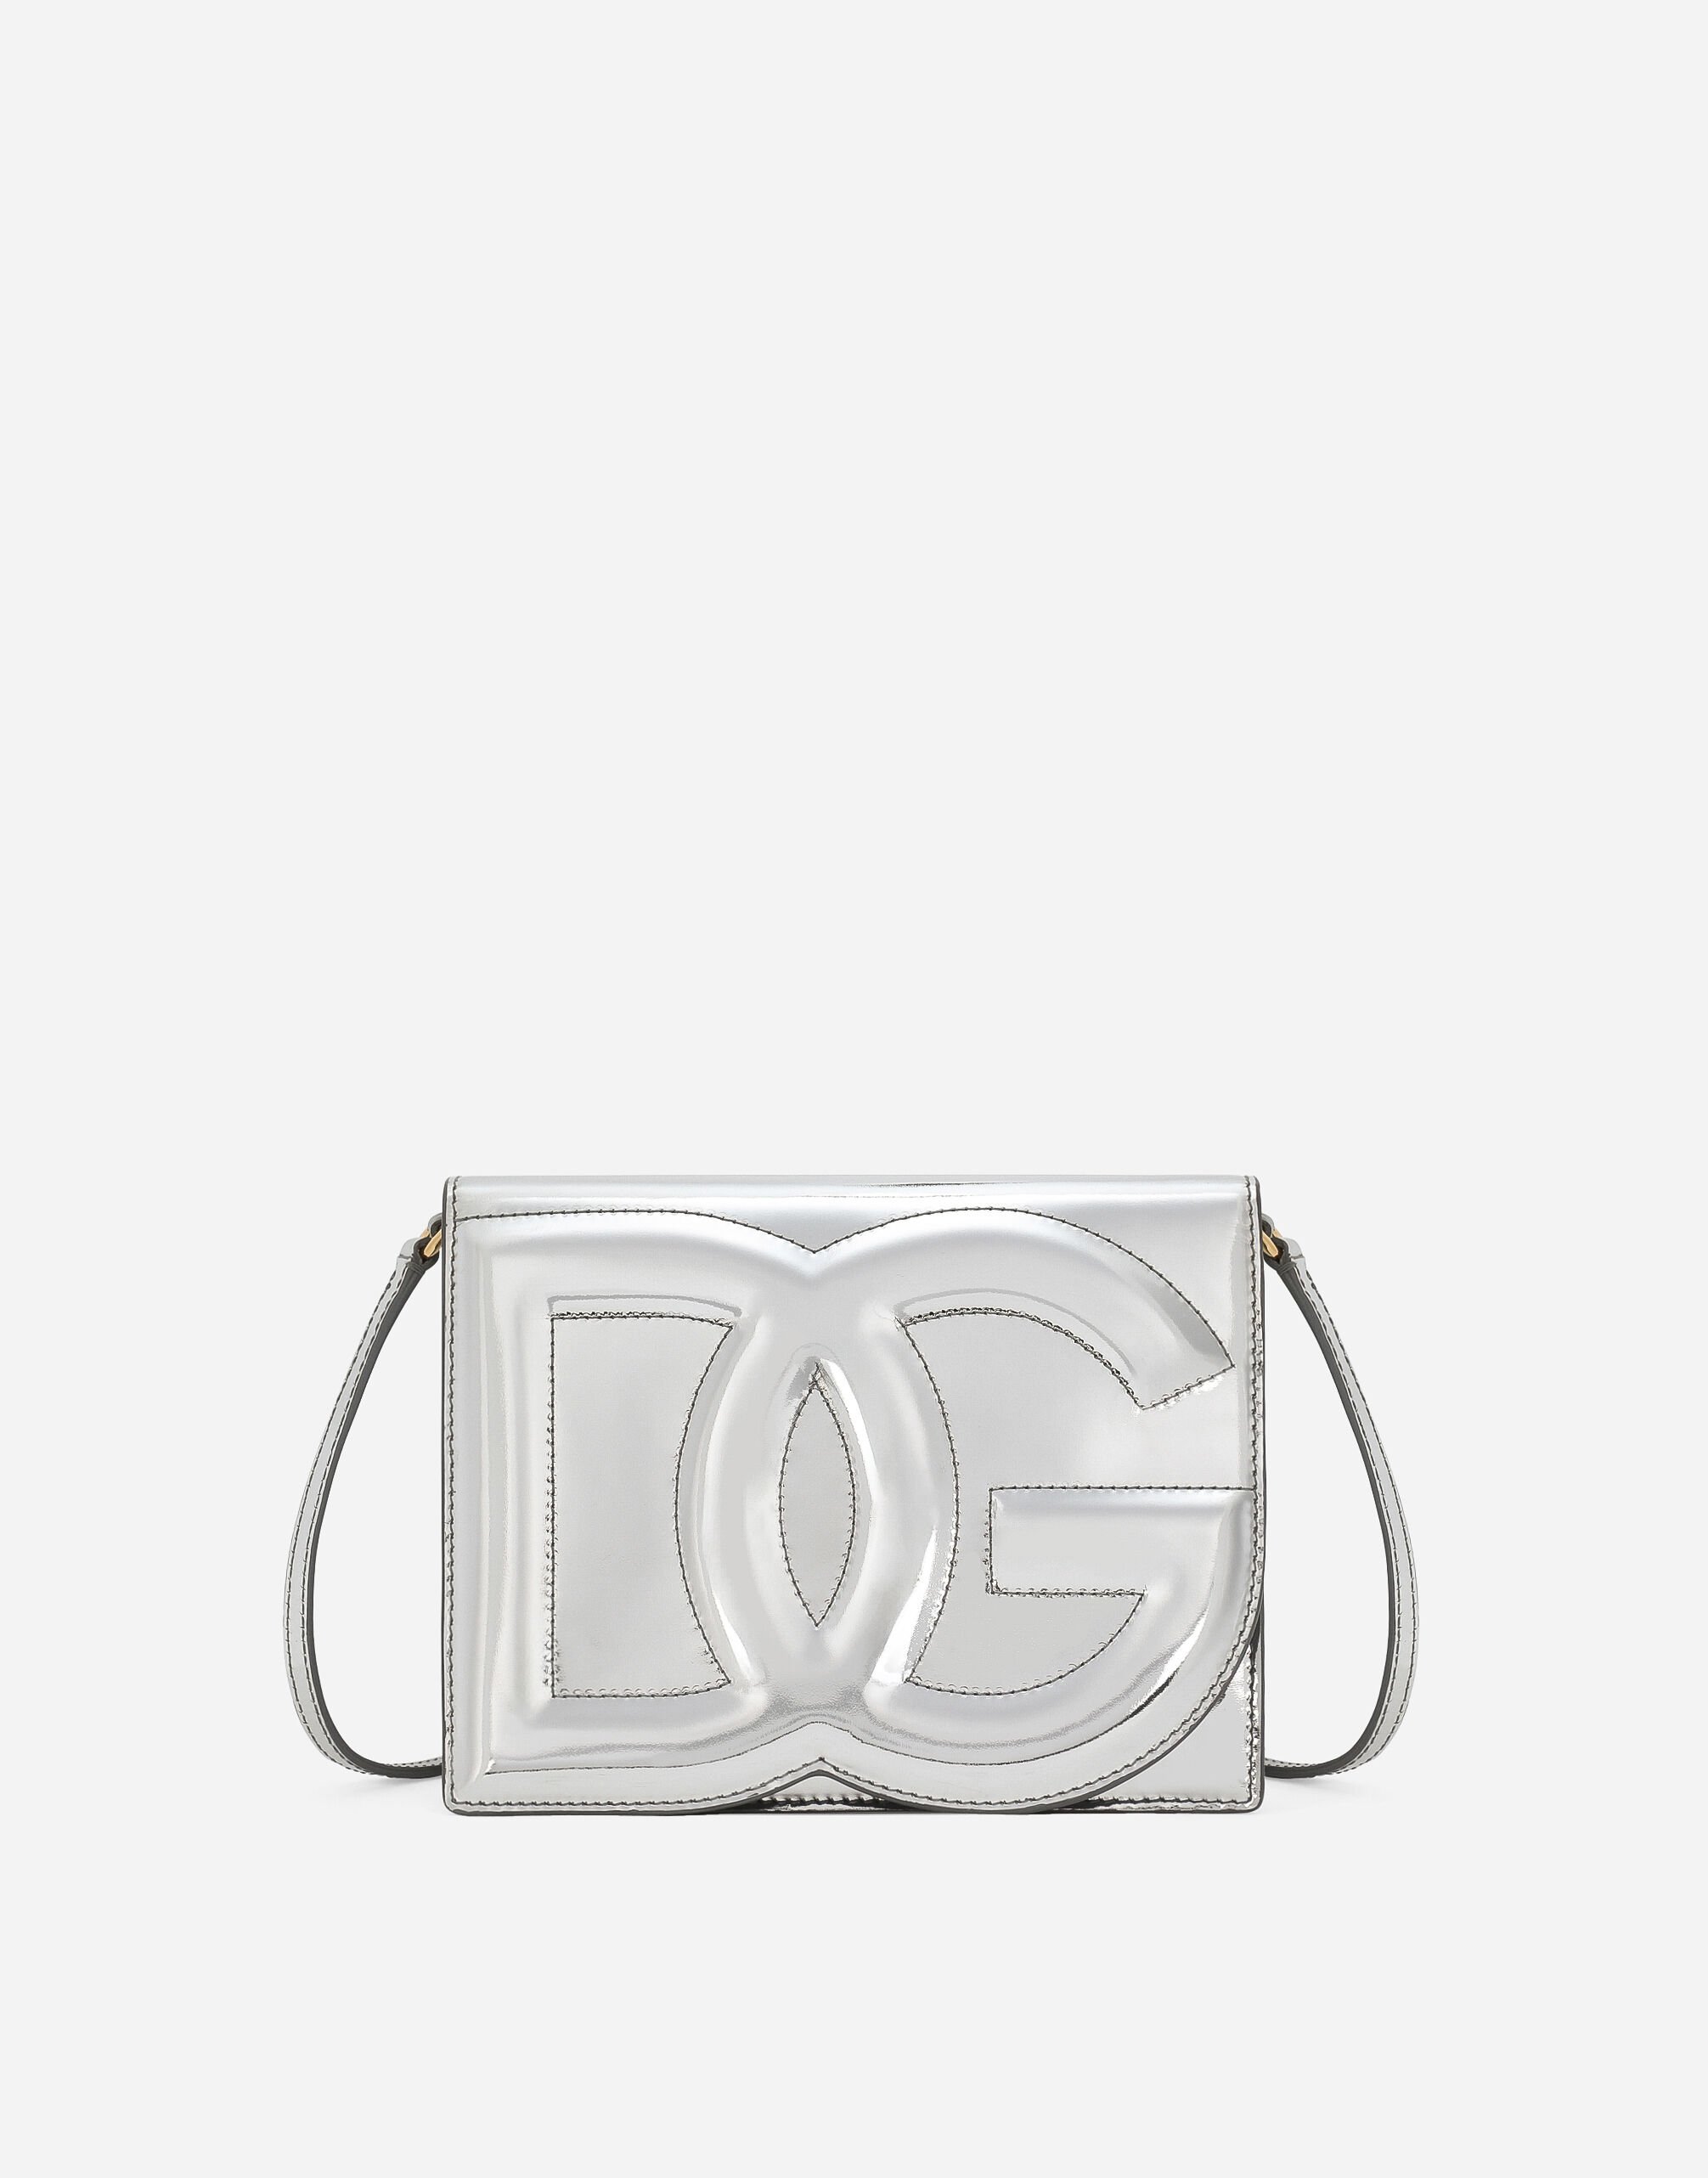 Dolce & Gabbana DG Logo Bag crossbody bag Black BB6711AV893